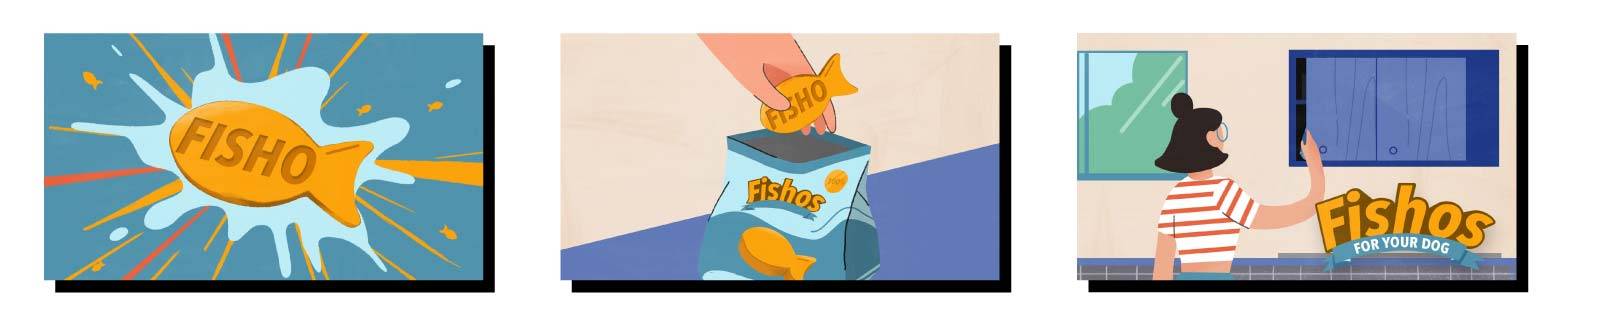 Une friandise Fishos apparaît en gros plan sur une éclaboussure, puis une image in situ montre une main plongeant dans un paquet de Fishos pour en sortir une friandise. Dans la dernière image, une femme ouvre un placard de cuisine. Le logo Fishos est affi